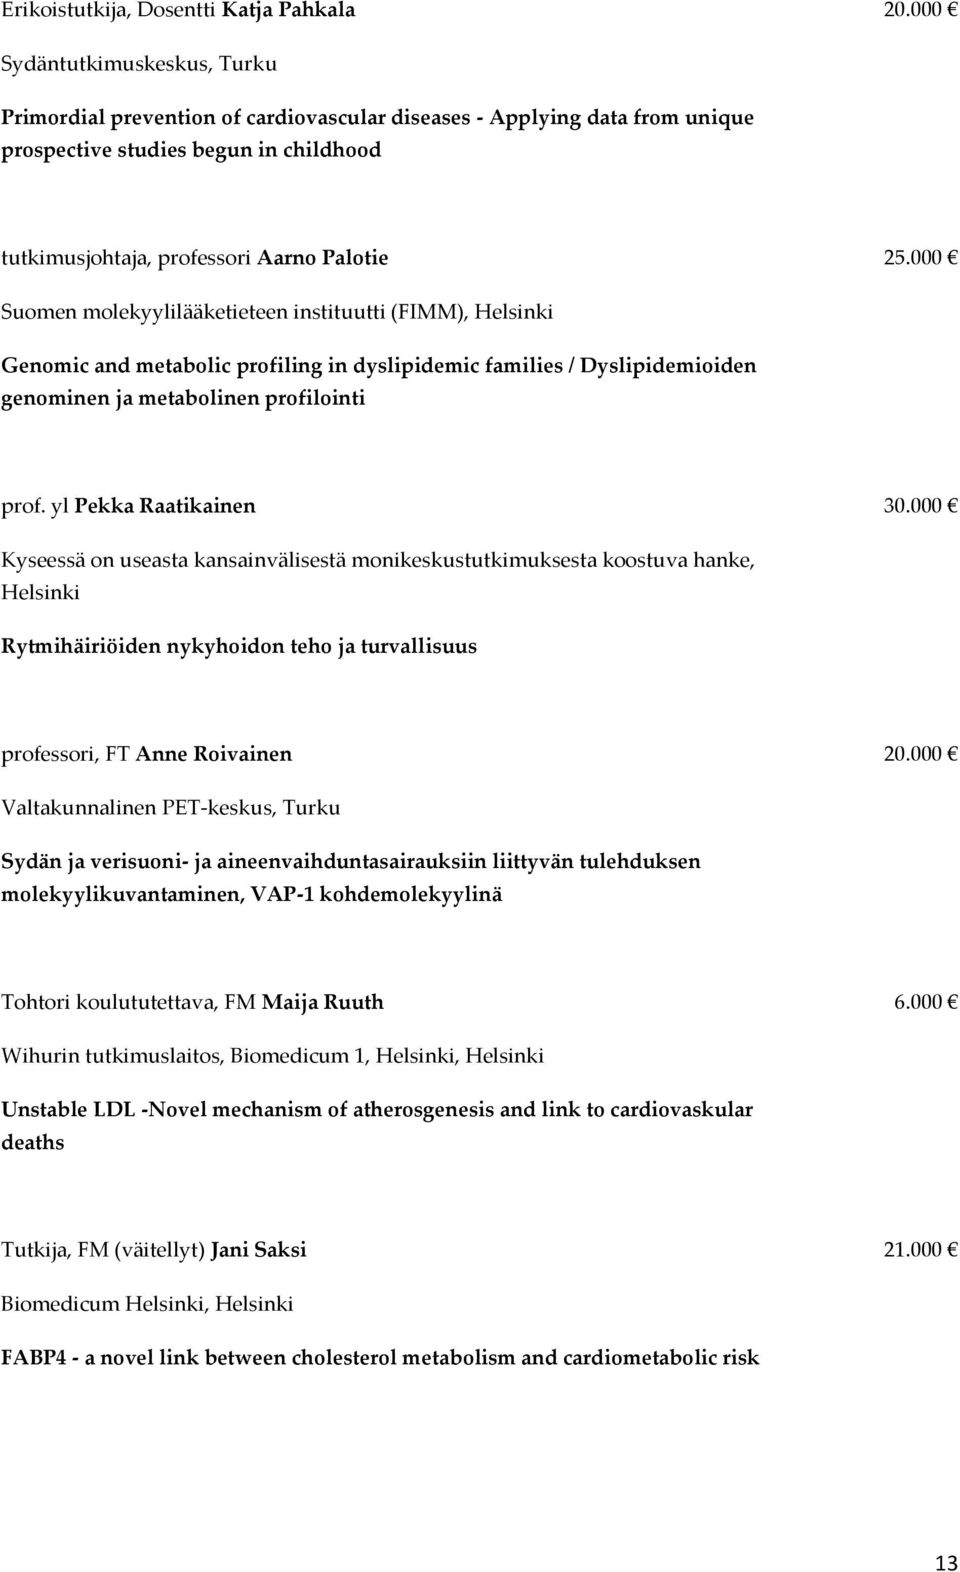 000 Suomen molekyylilääketieteen instituutti (FIMM), Helsinki Genomic and metabolic profiling in dyslipidemic families / Dyslipidemioiden genominen ja metabolinen profilointi prof.